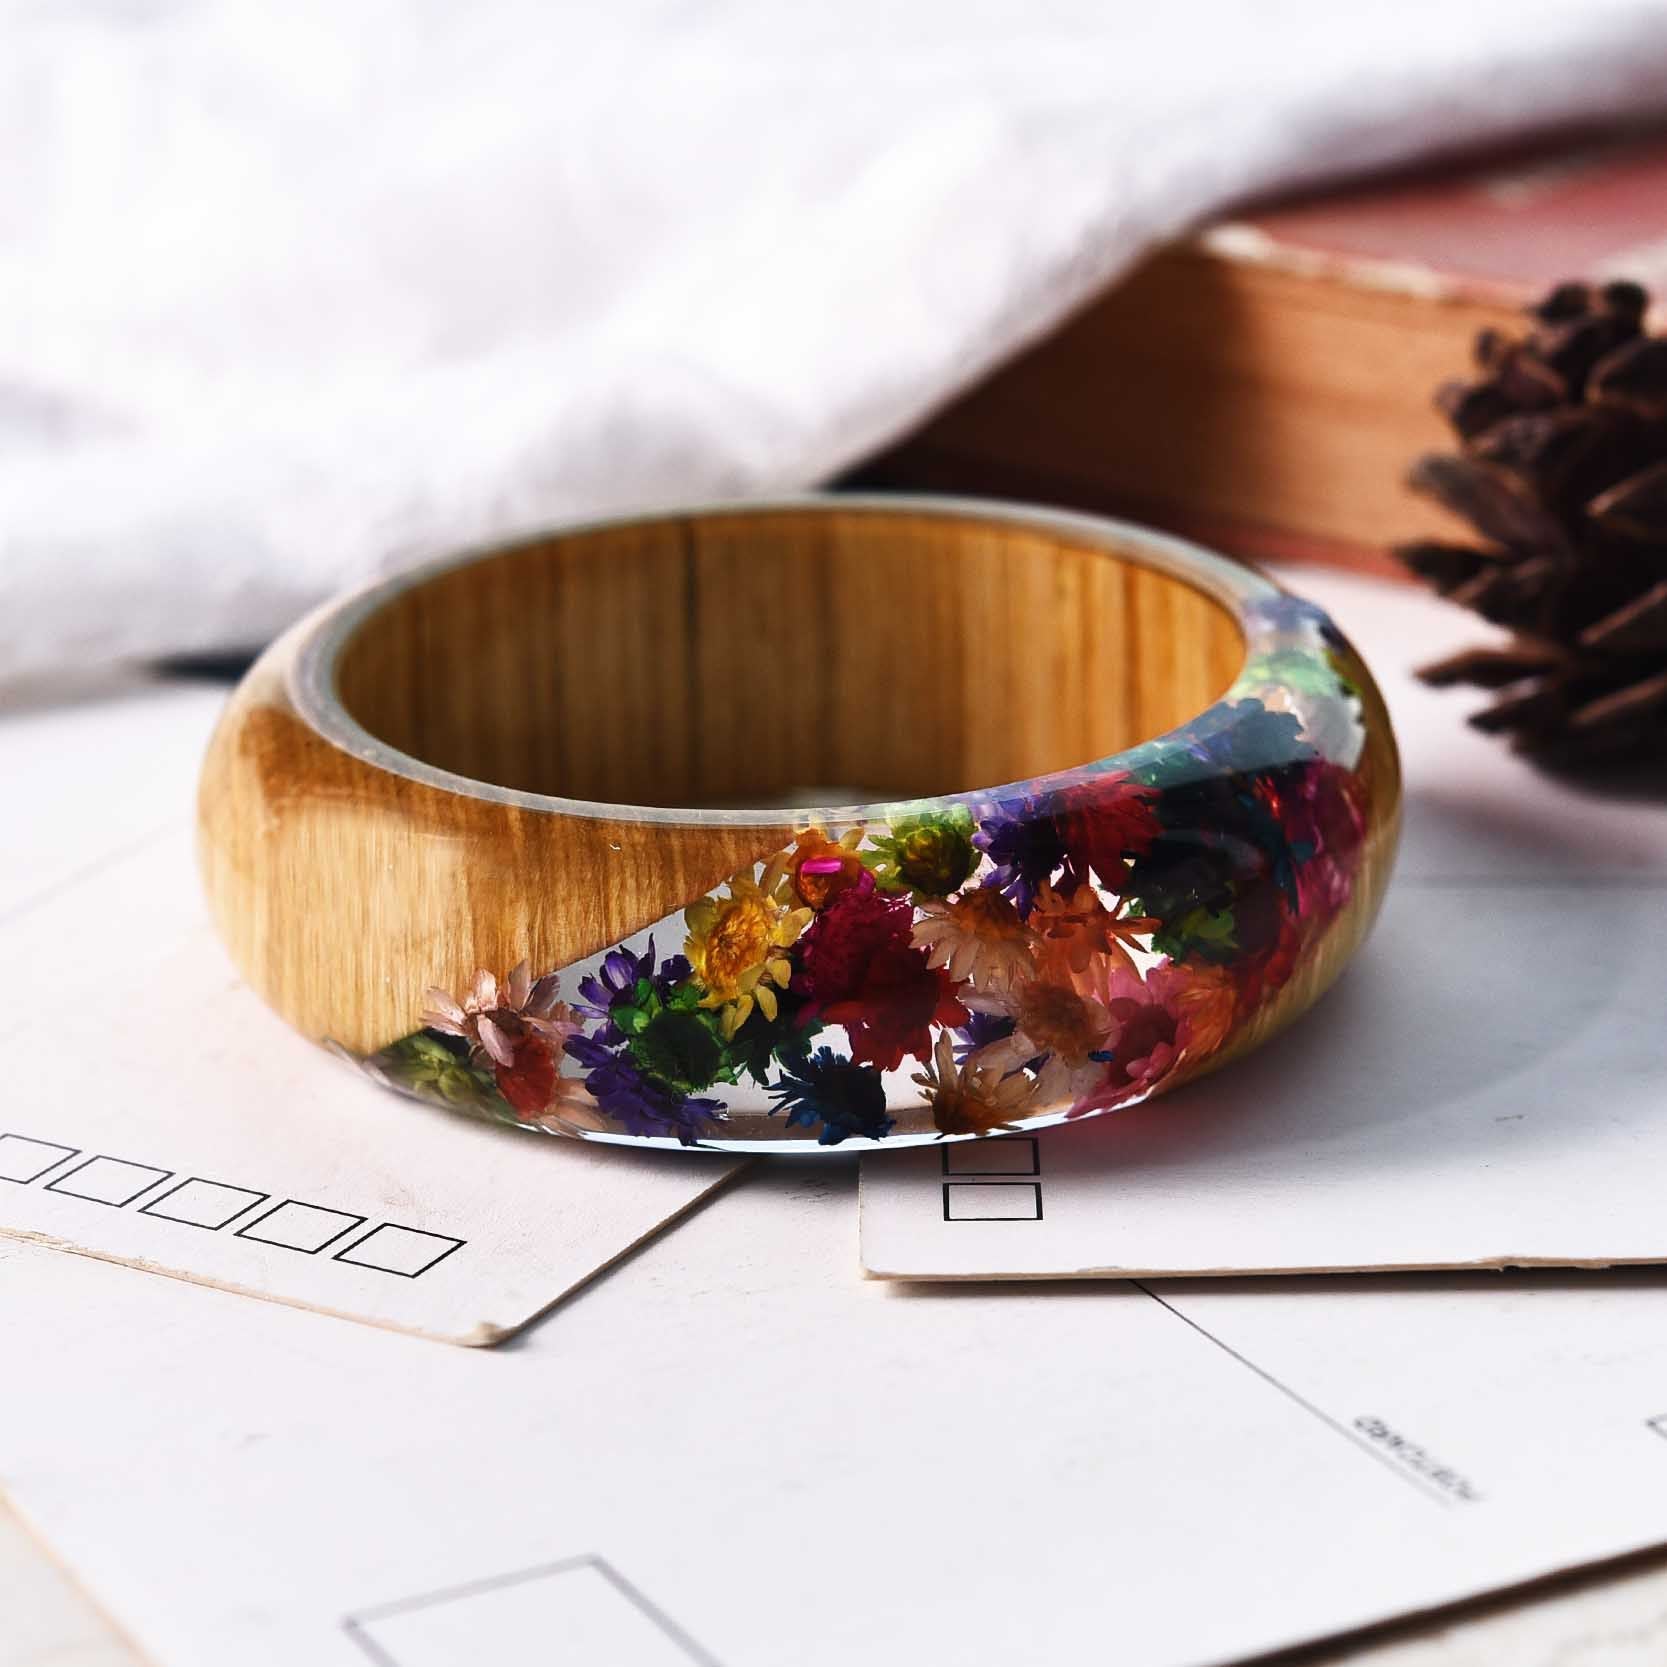 A wide wooded bracelet